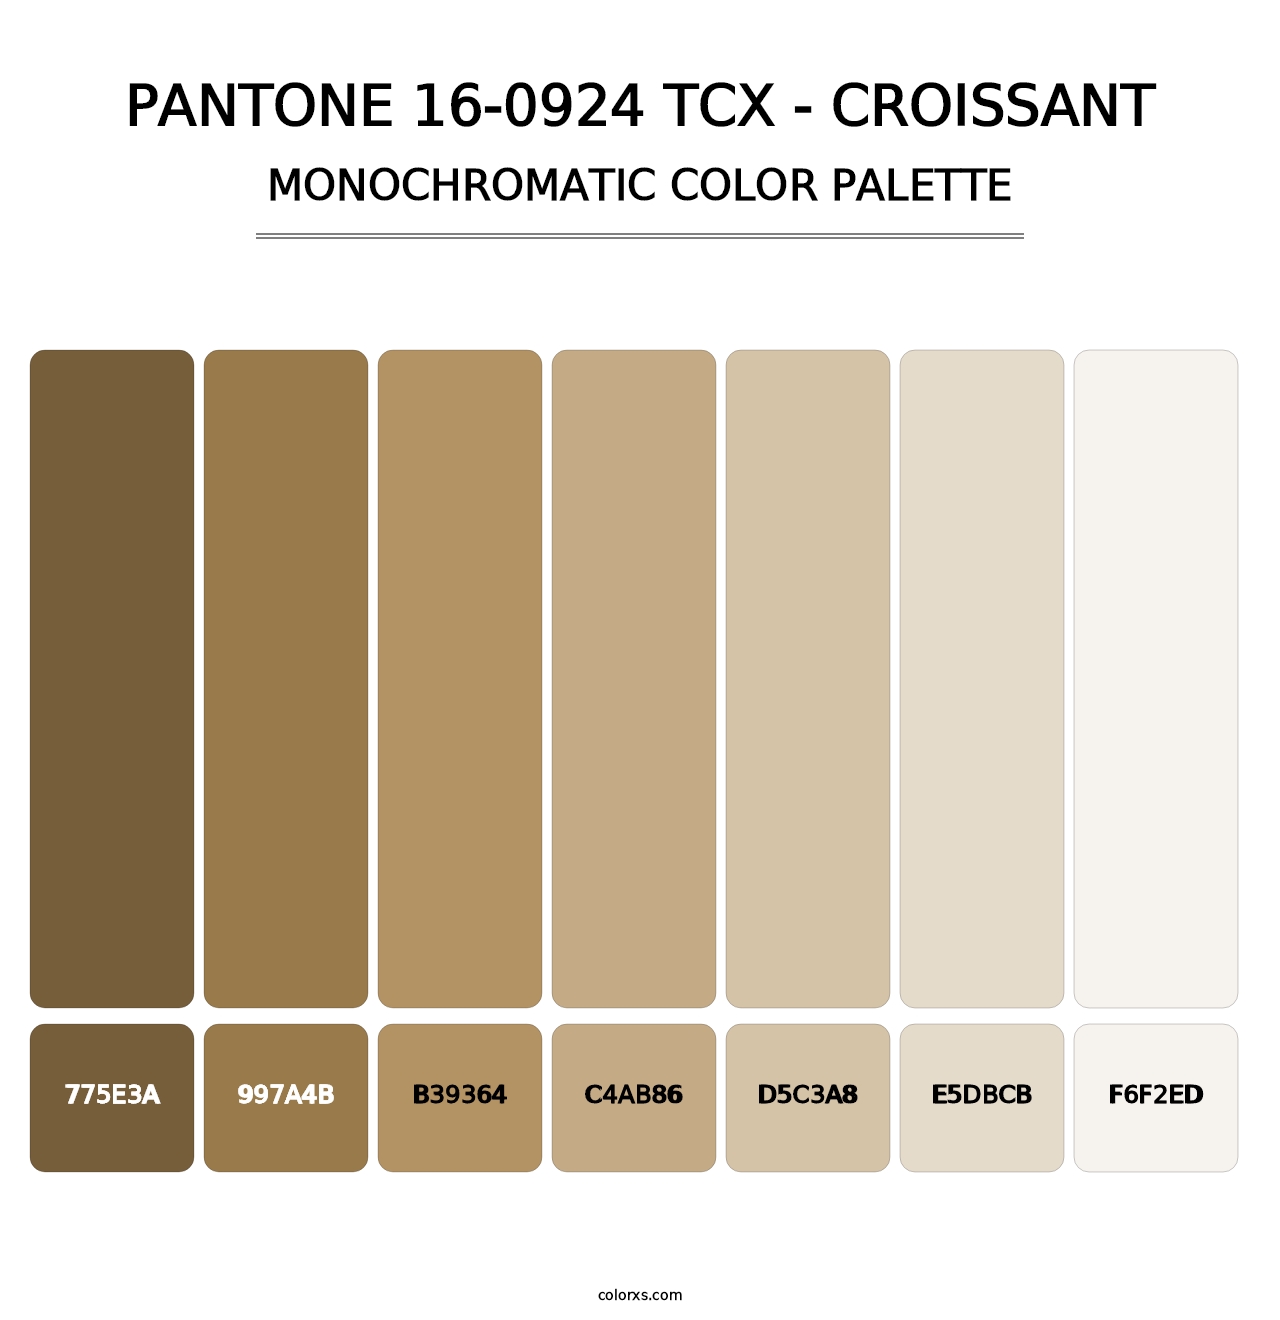 PANTONE 16-0924 TCX - Croissant - Monochromatic Color Palette